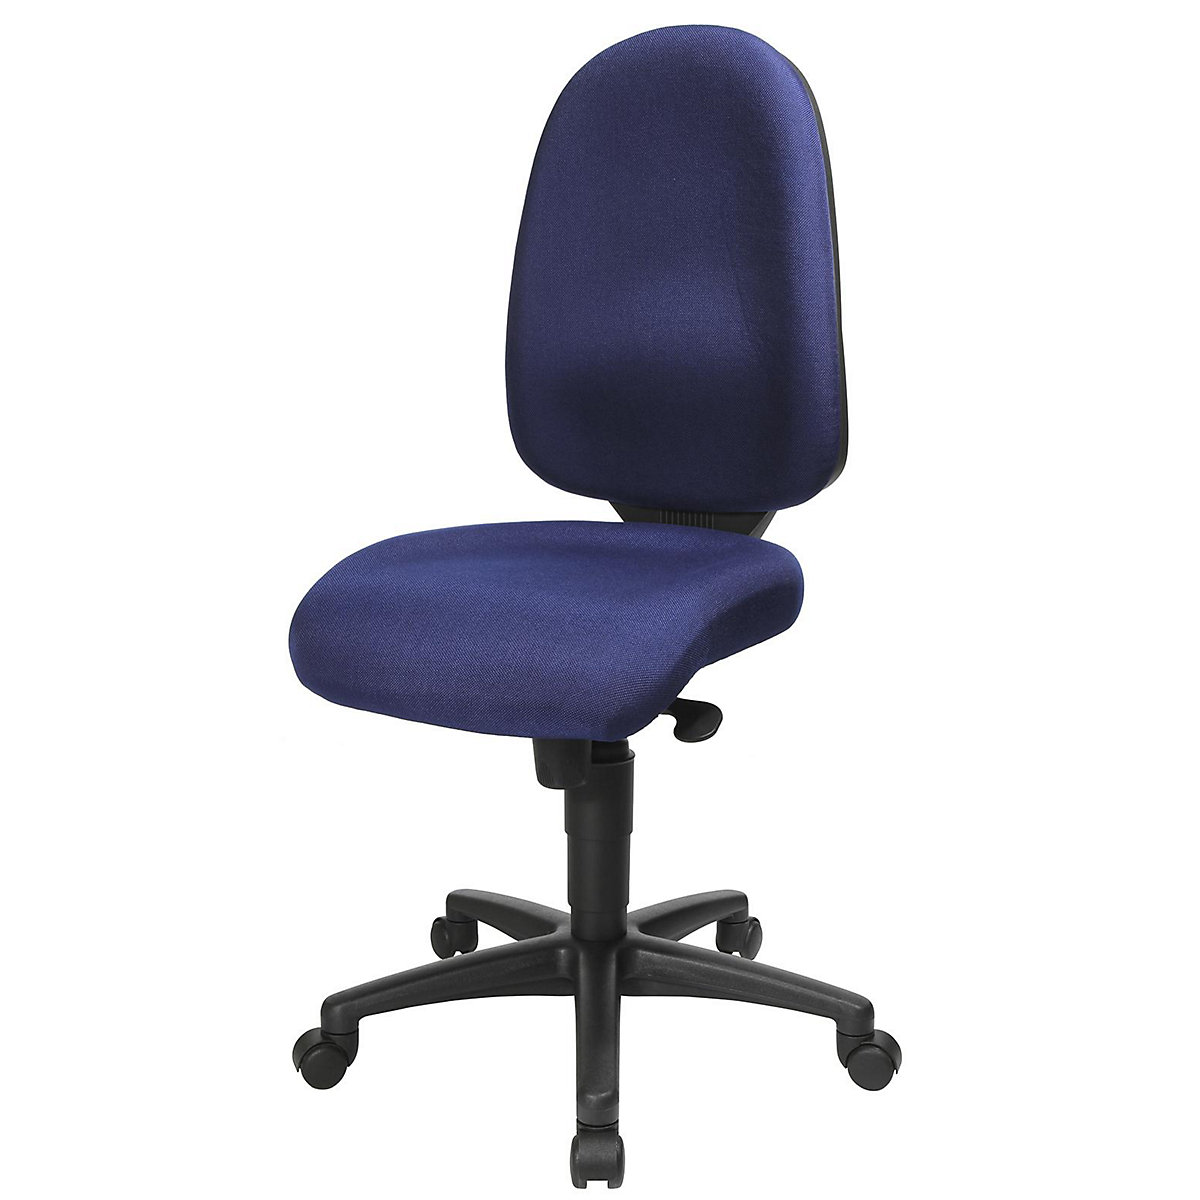 Okretna stolica s potporom za kralježnicu, sinkrona mehanika, sjedalo s potporom za kralježnicu – Topstar, visina naslona za leđa 550 mm, presvlaka u royal plavoj boji-16